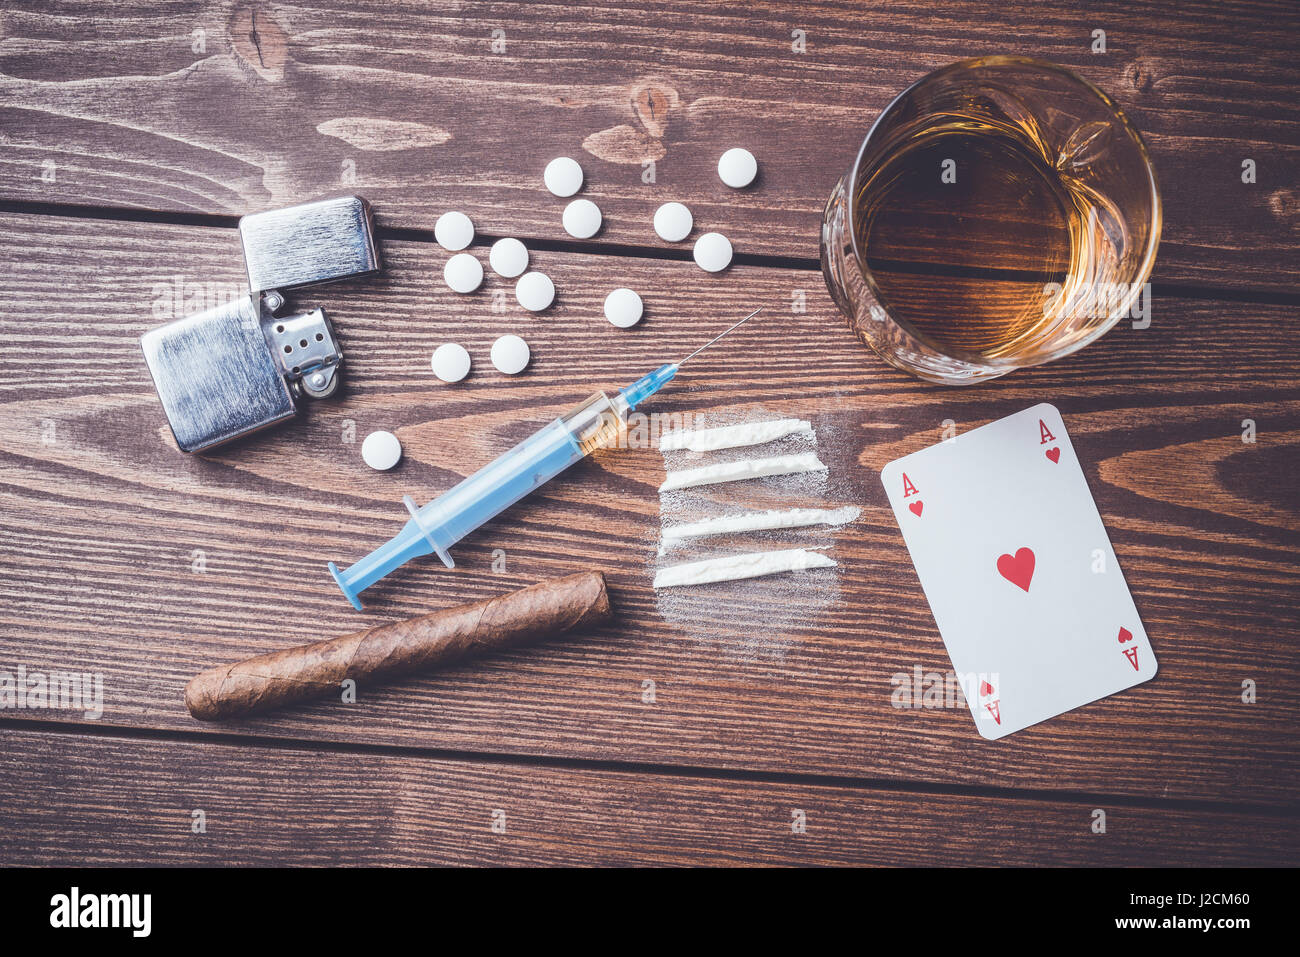 Harte Drogen mit Pillen, Karten spielen, Spritze und Alkohol auf hölzernen Tisch Stockfoto